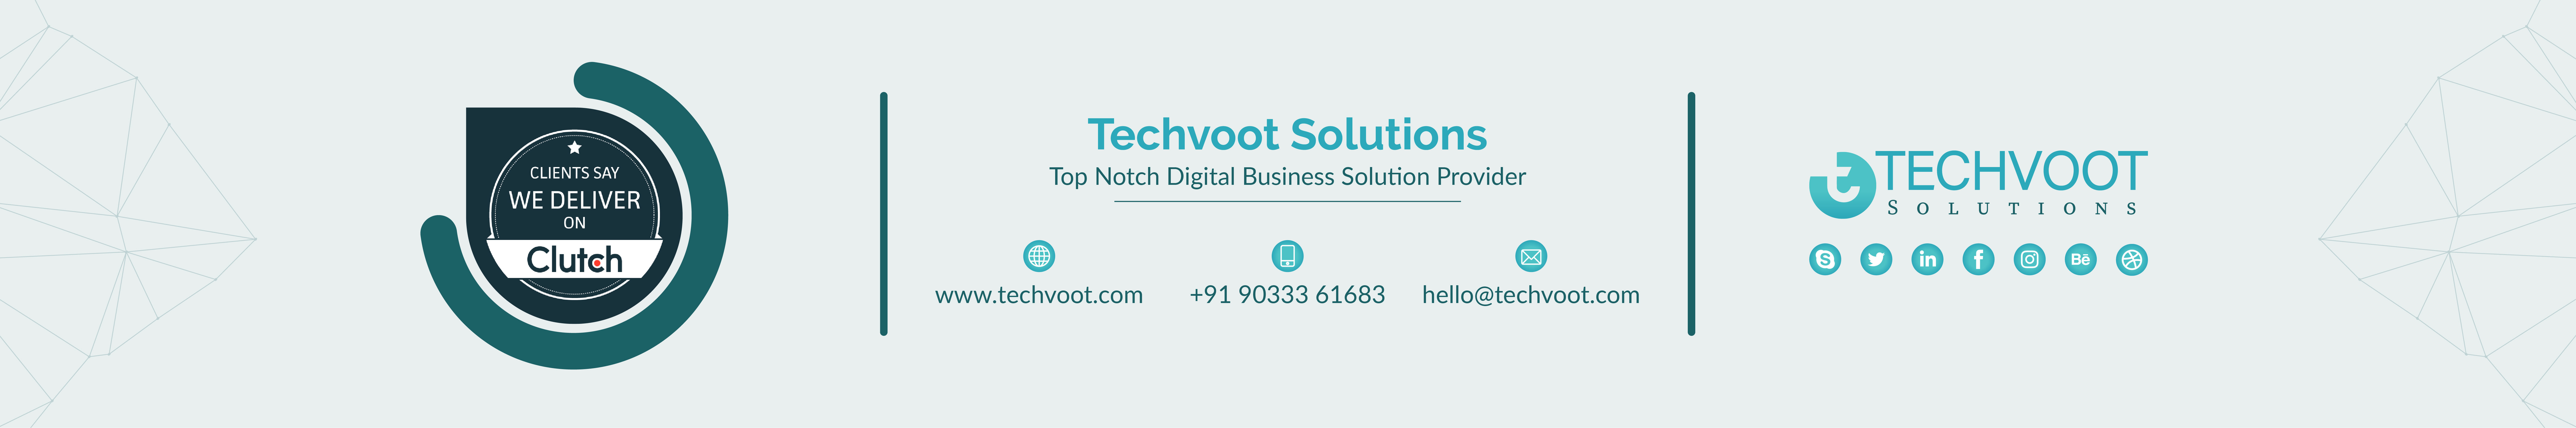 Techvoot Solutionss profilbanner